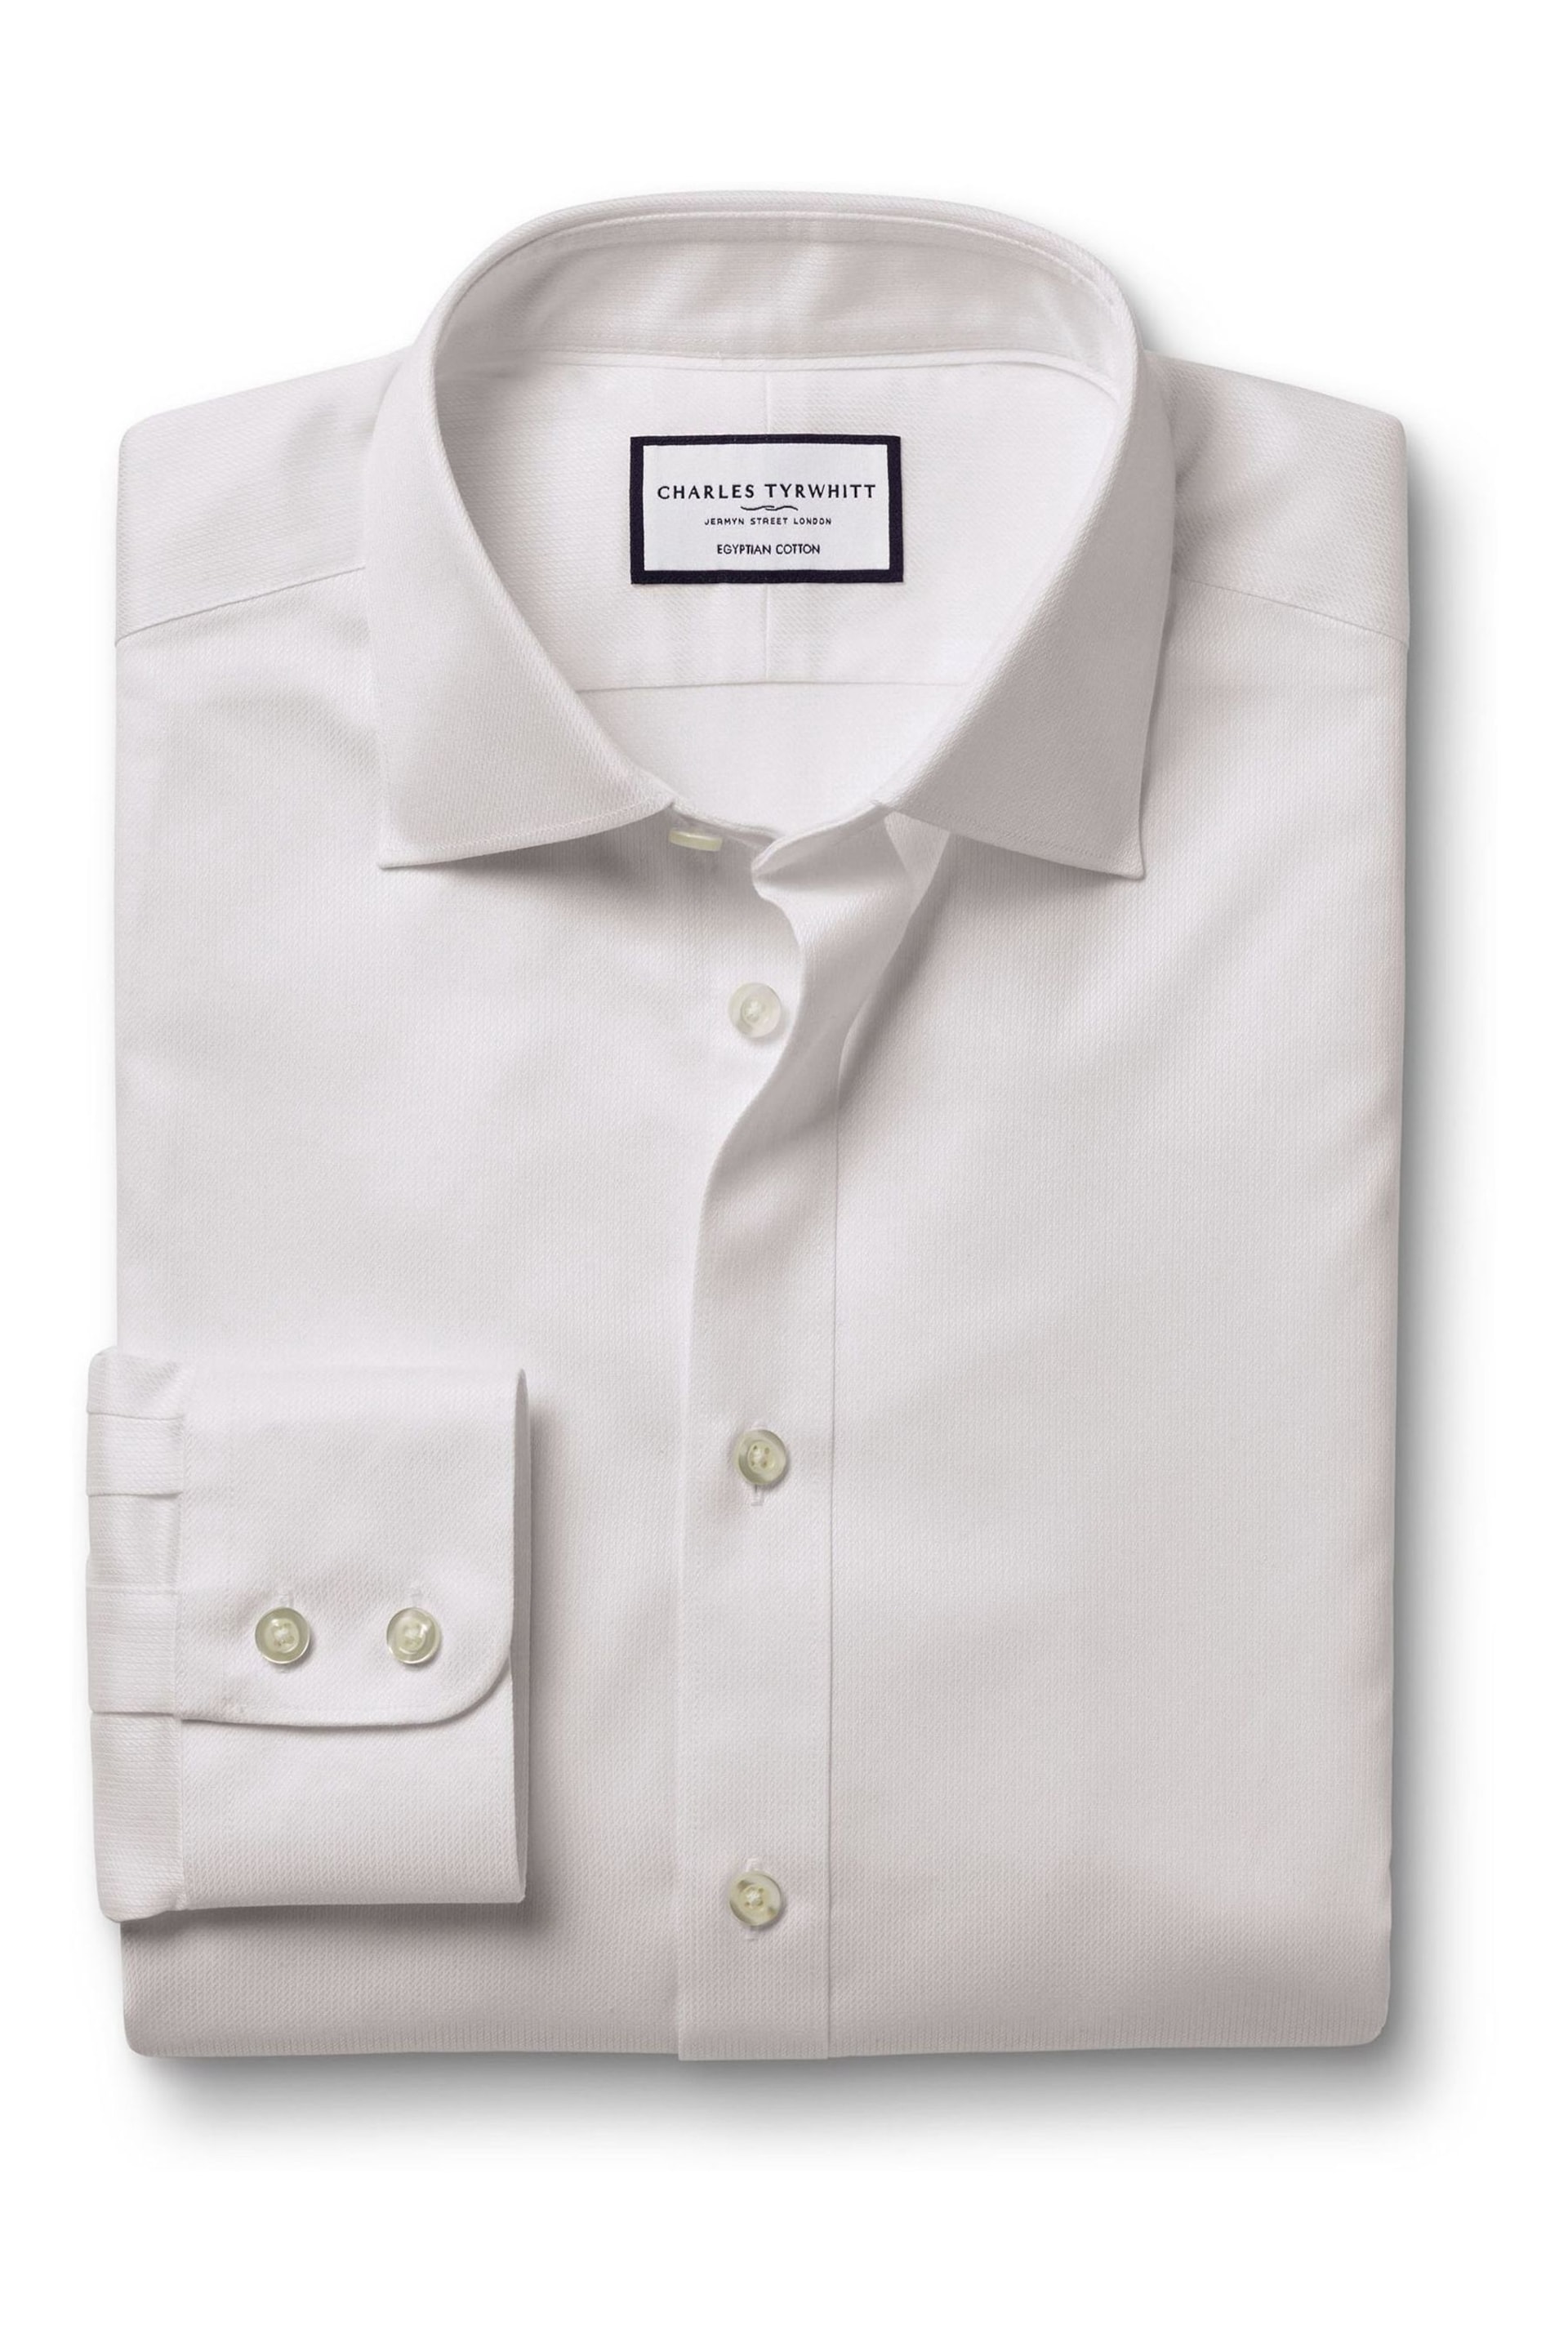 Charles Tyrwhitt White Egyptian Cotton Windsor Weave Slim Fit Shirt - Image 4 of 6